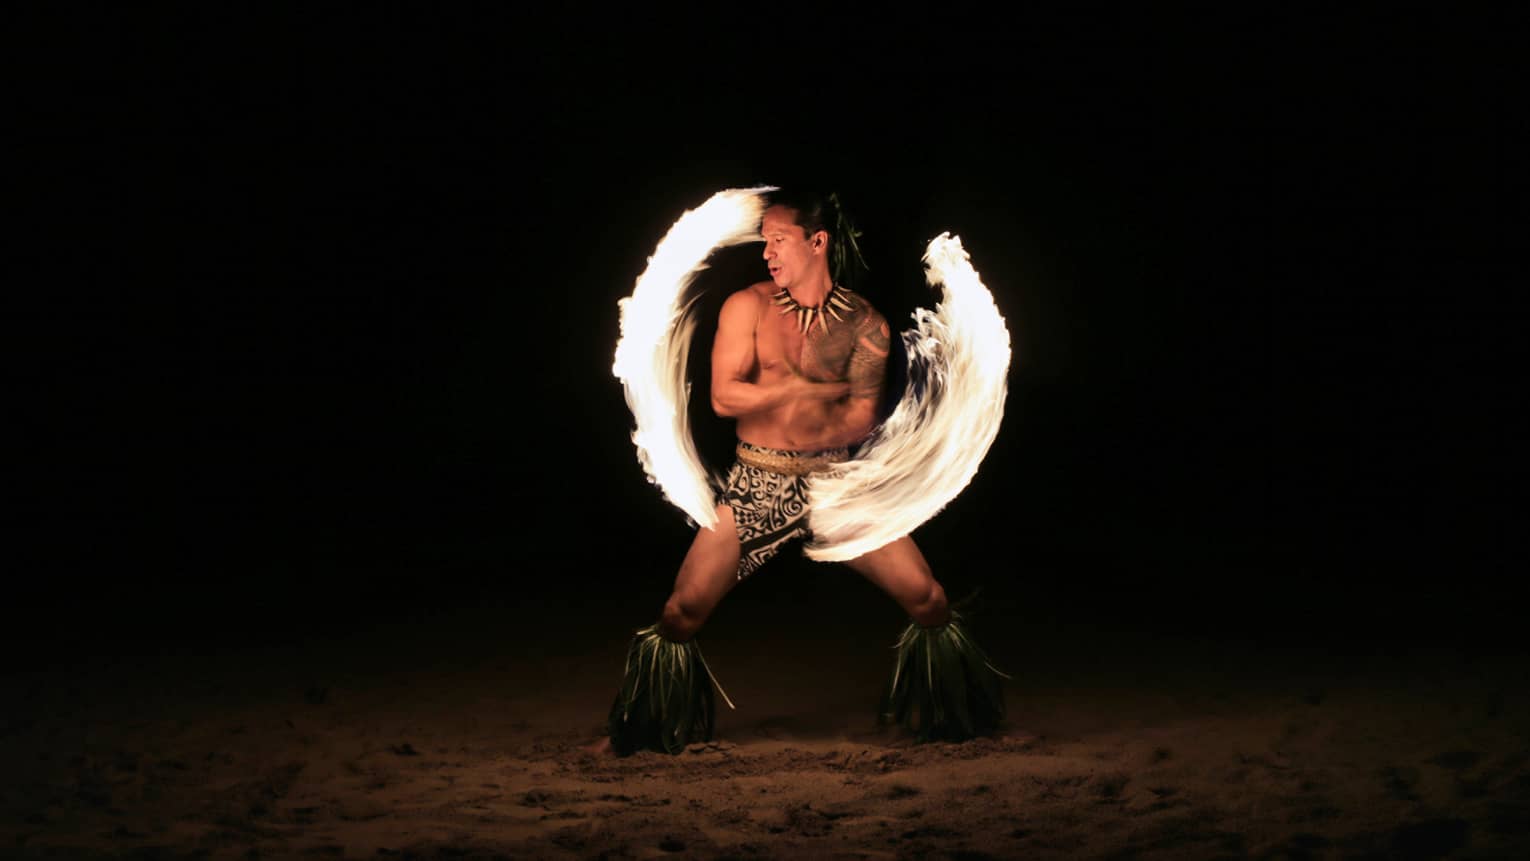 Fire dancer spins fire on the beach